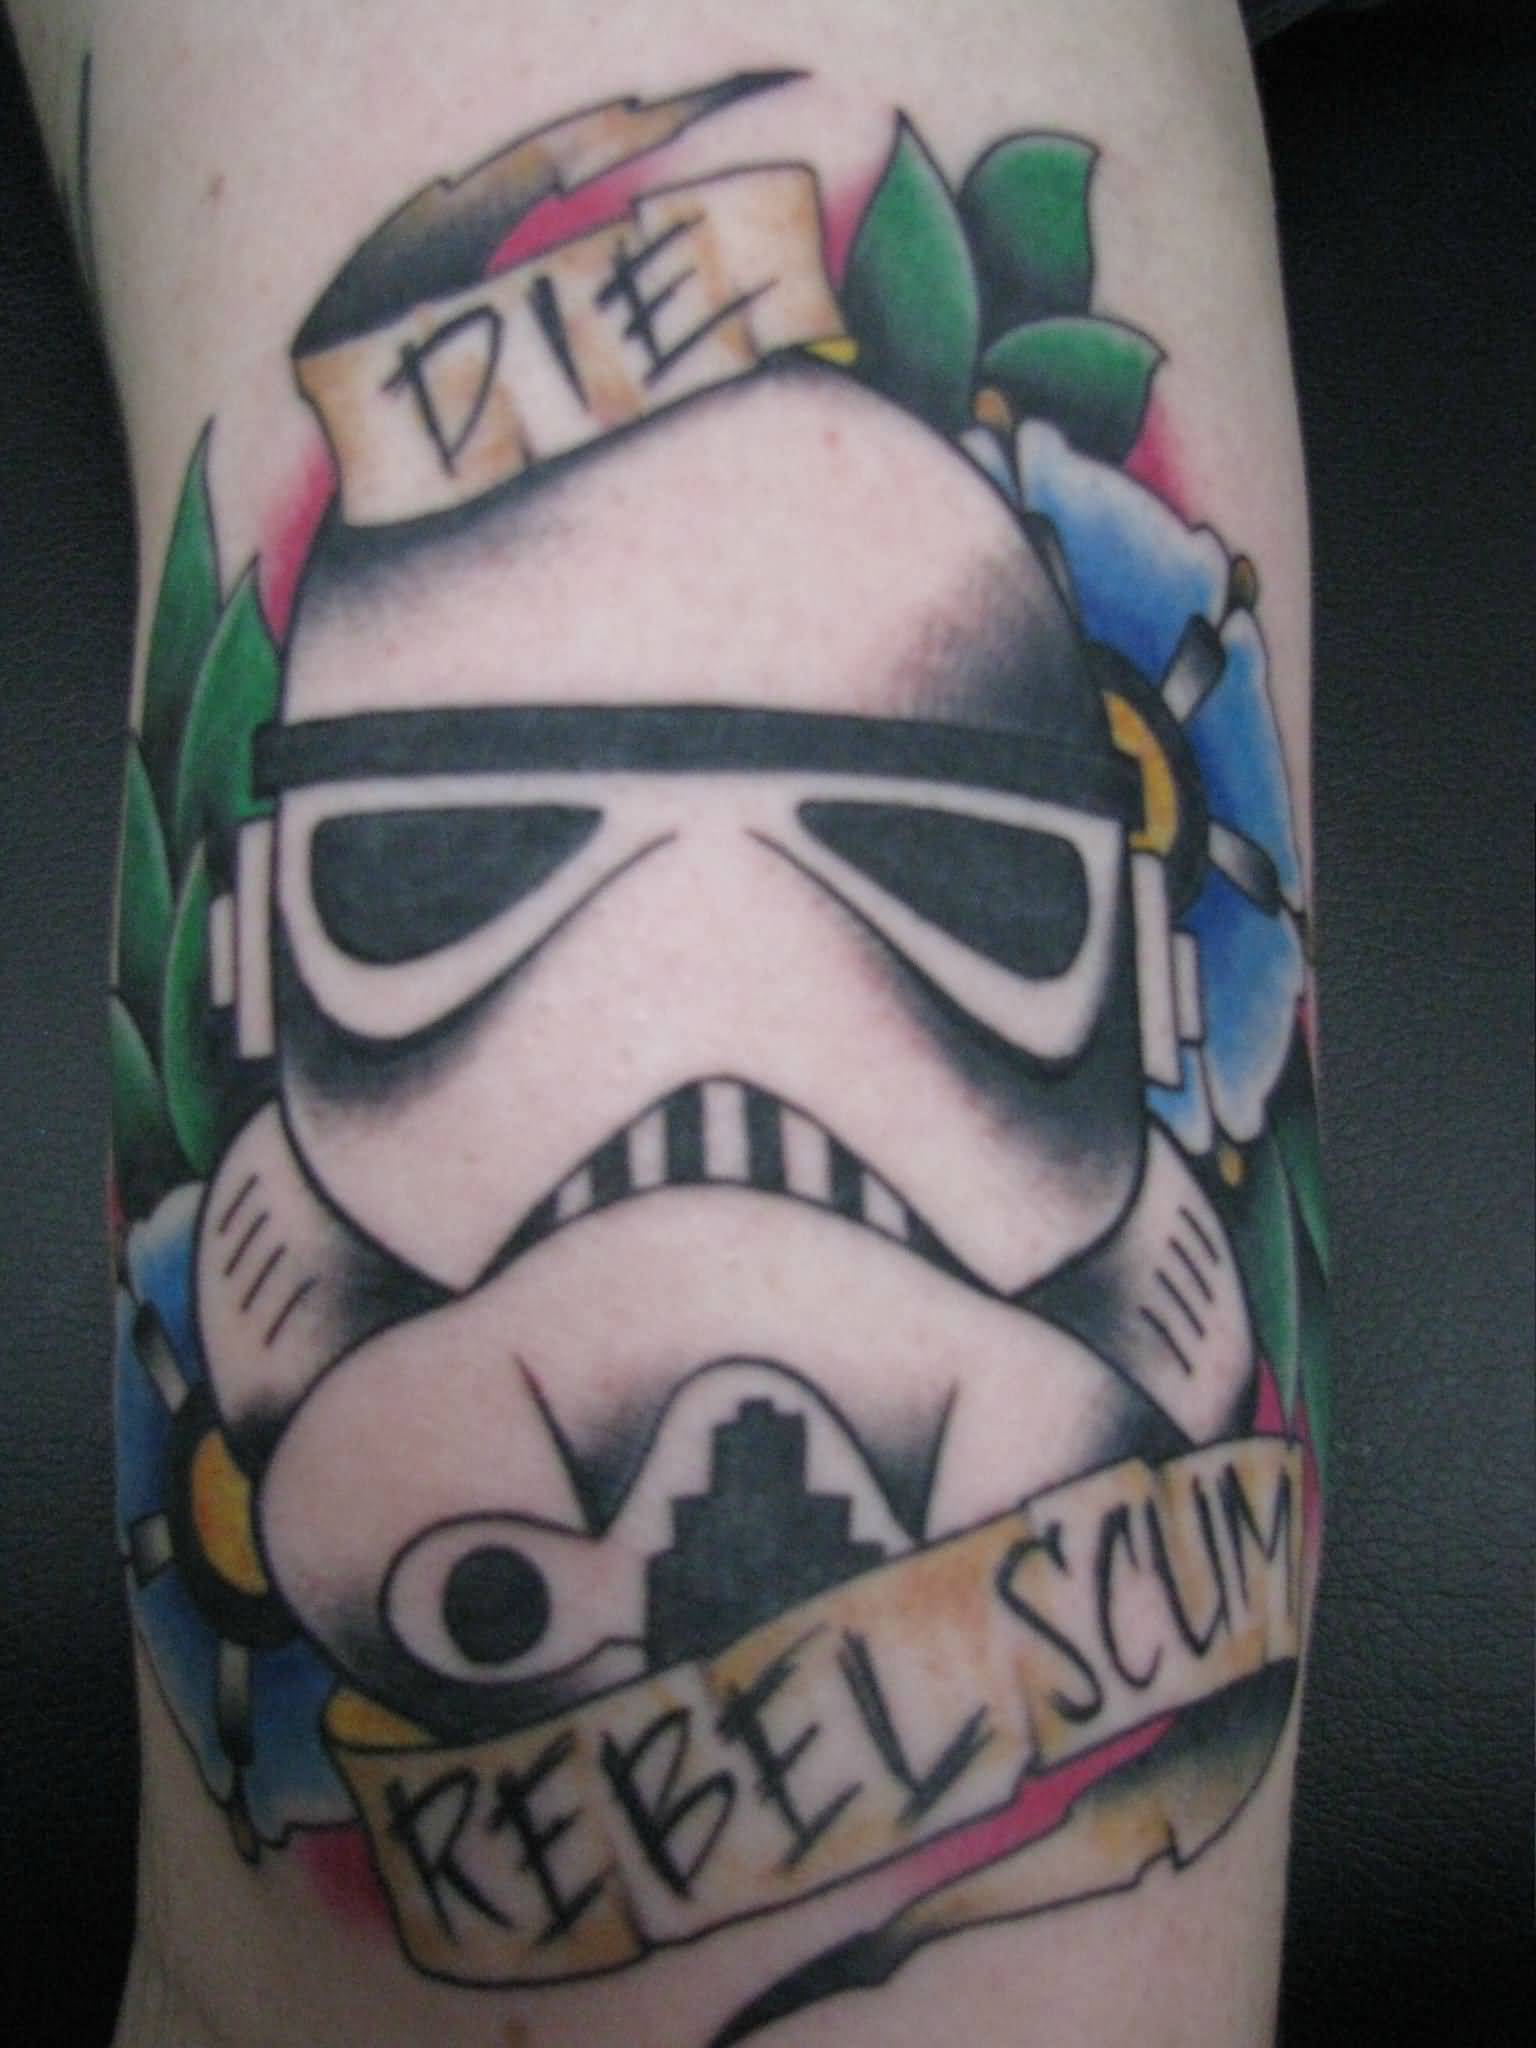 Die Rebel Scum Banner With Stormtrooper Tattoo